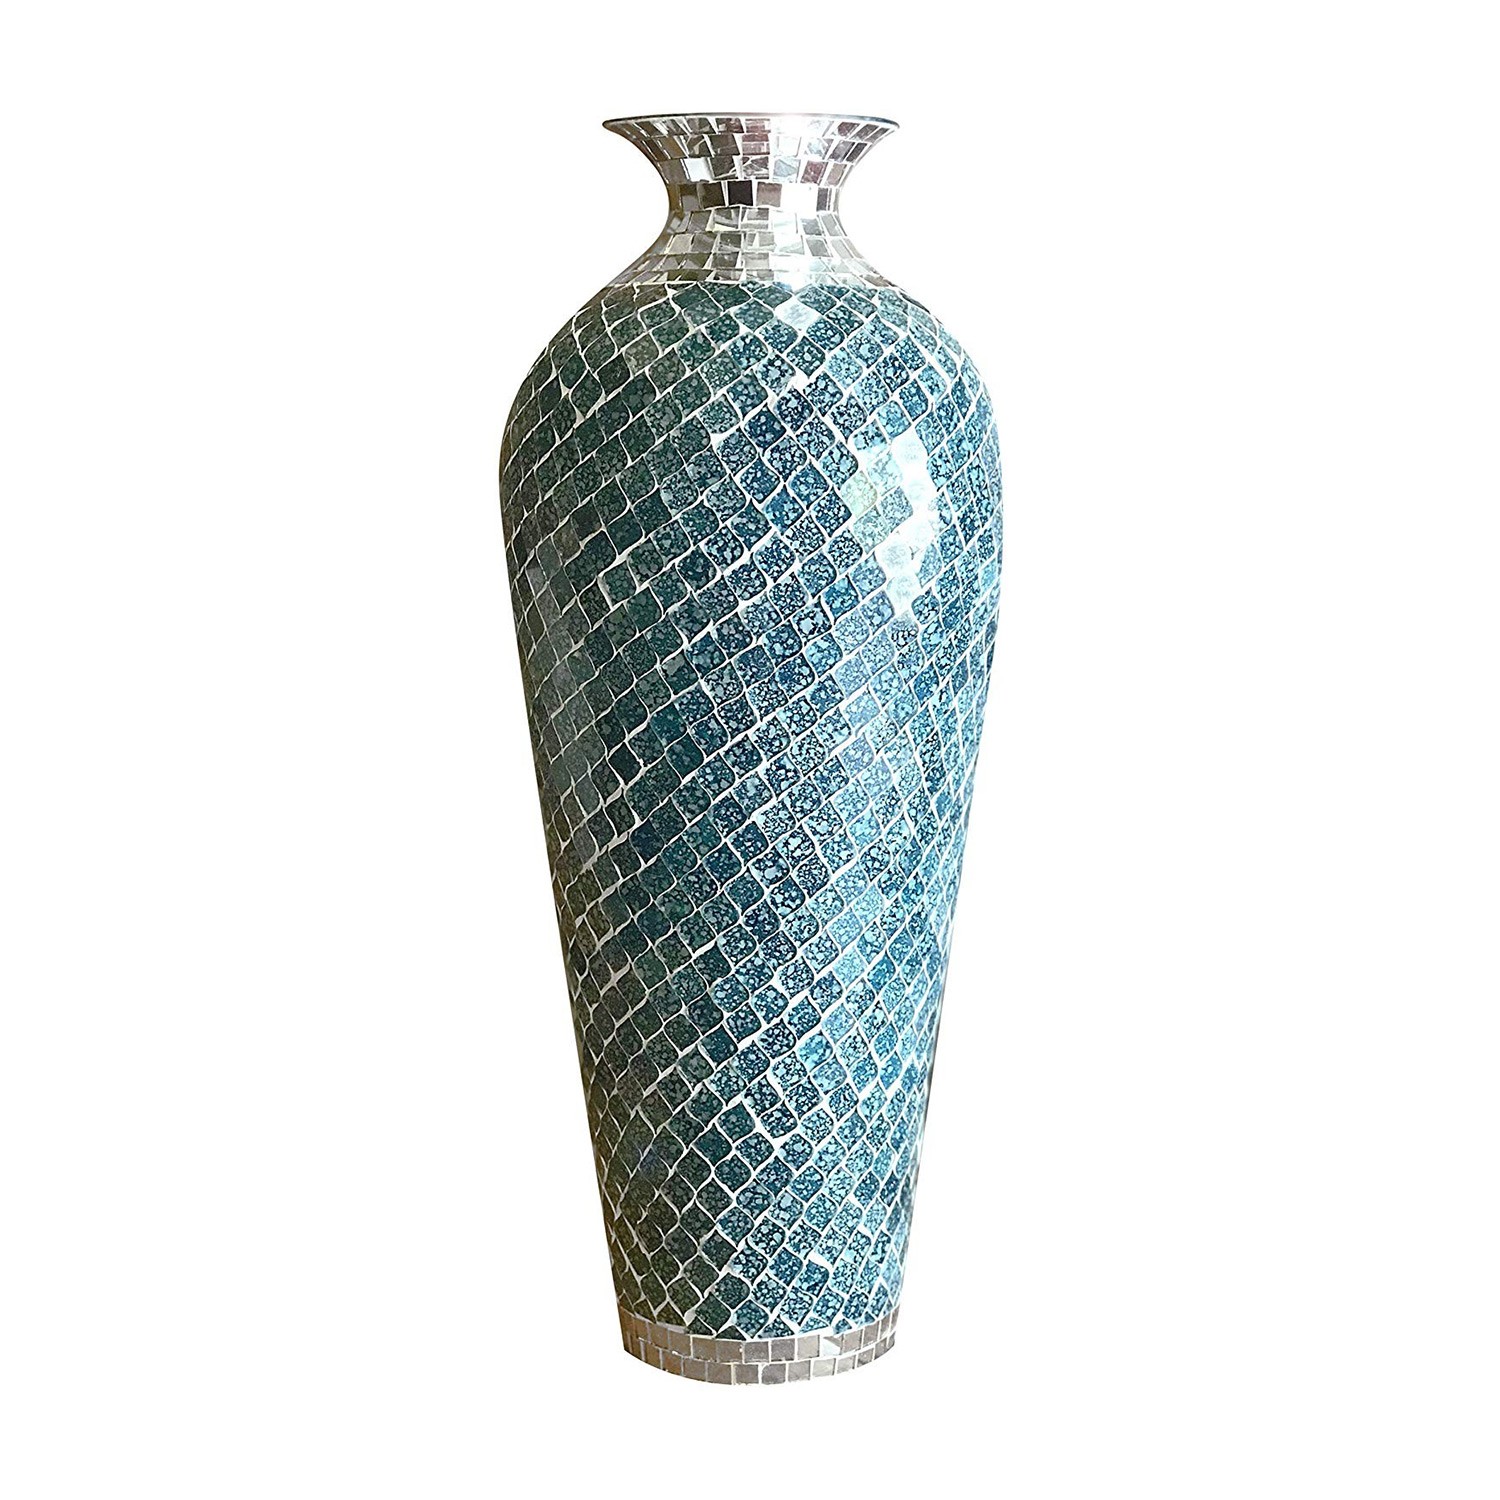 Vanding Jet trække sig tilbage Buy Decorative Metal Floor Vase in Teal & Silver Color at DecorShore